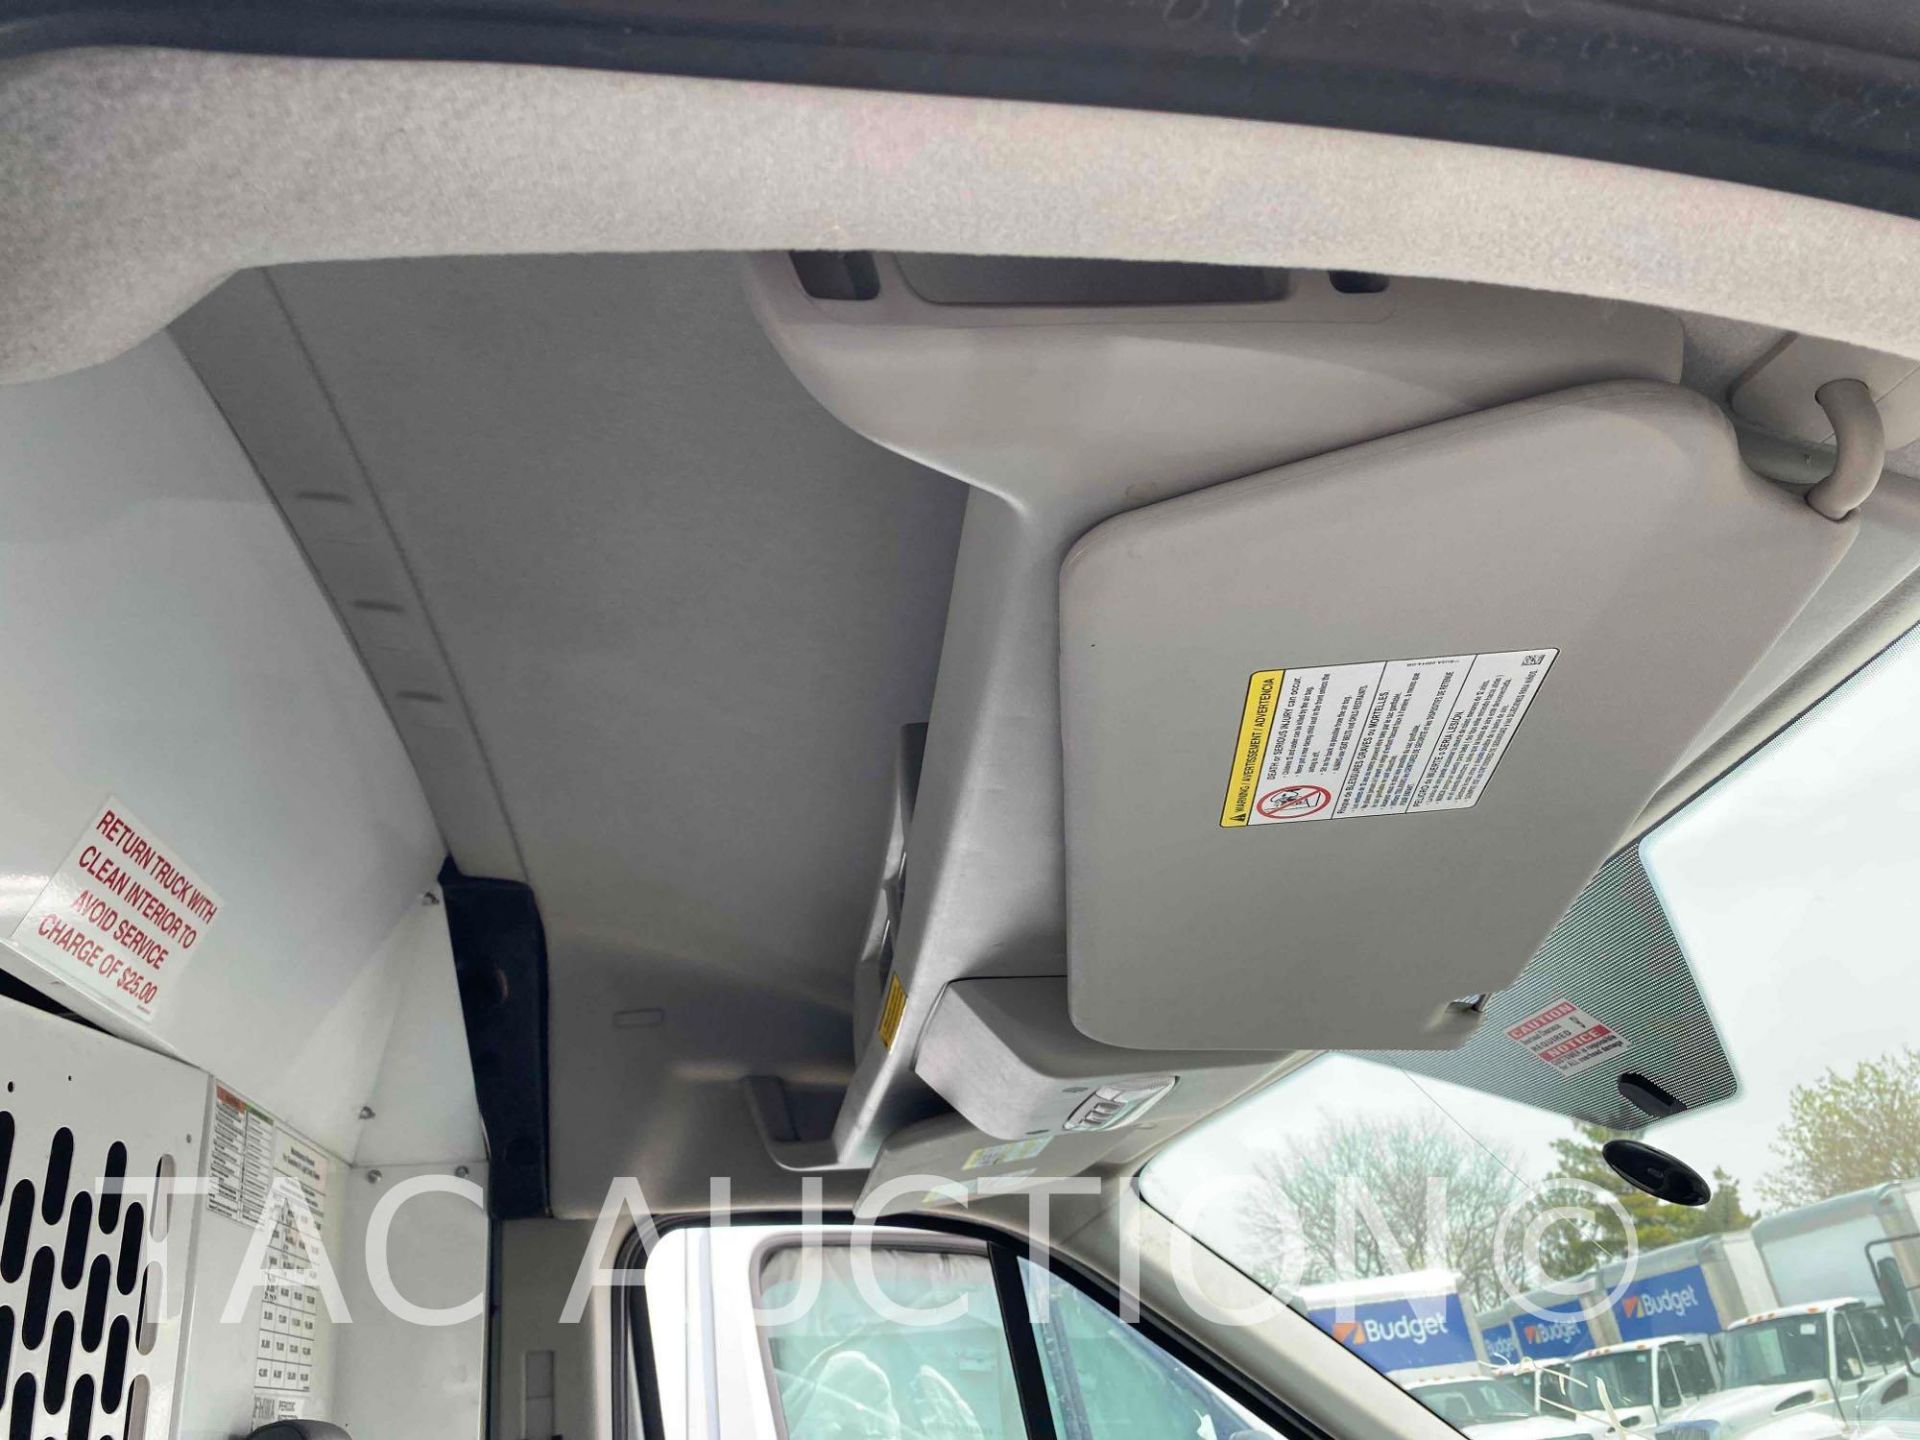 2019 Ford Transit 150 Cargo Van - Image 19 of 38